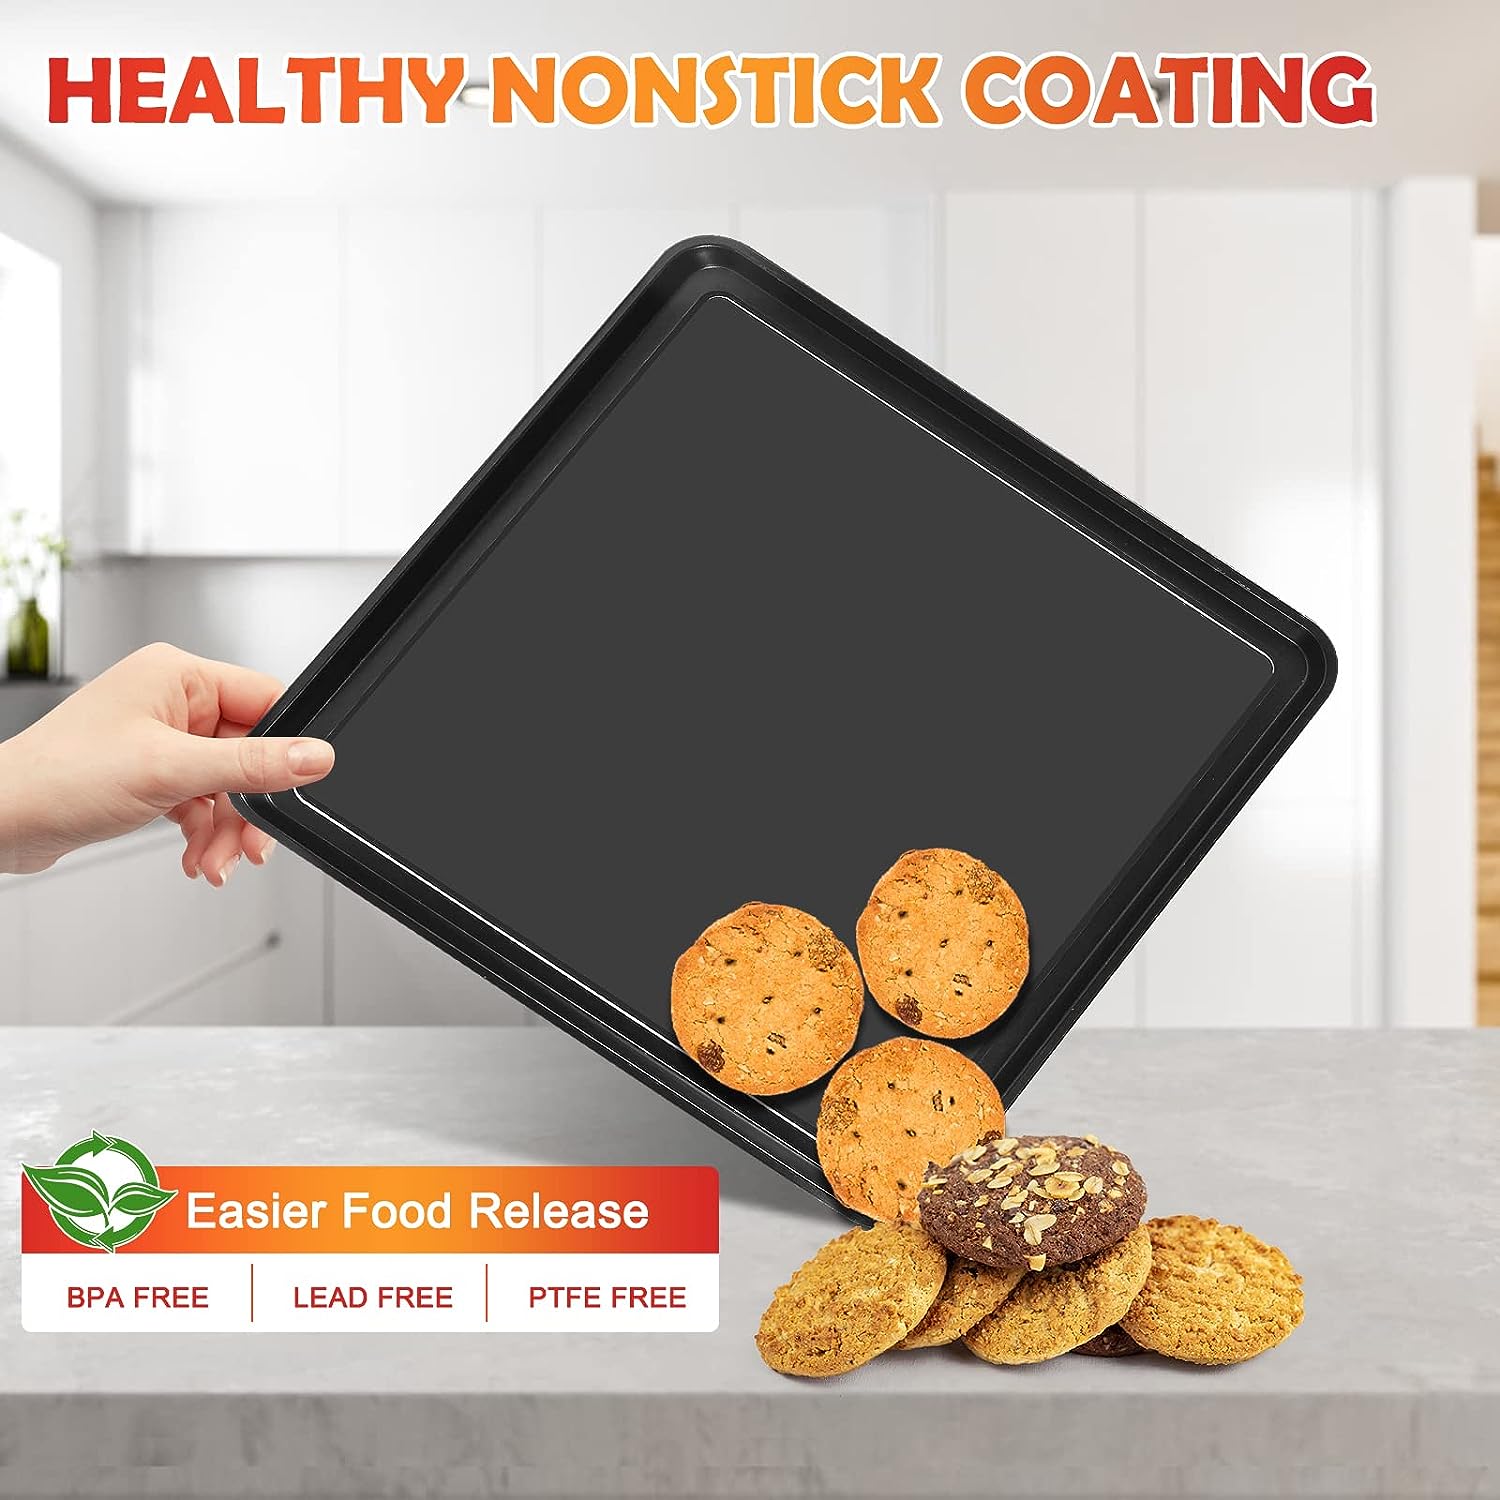 13 × 13 Nonstick Baking Tray Sheet Pan for Ninja Foodi SP100